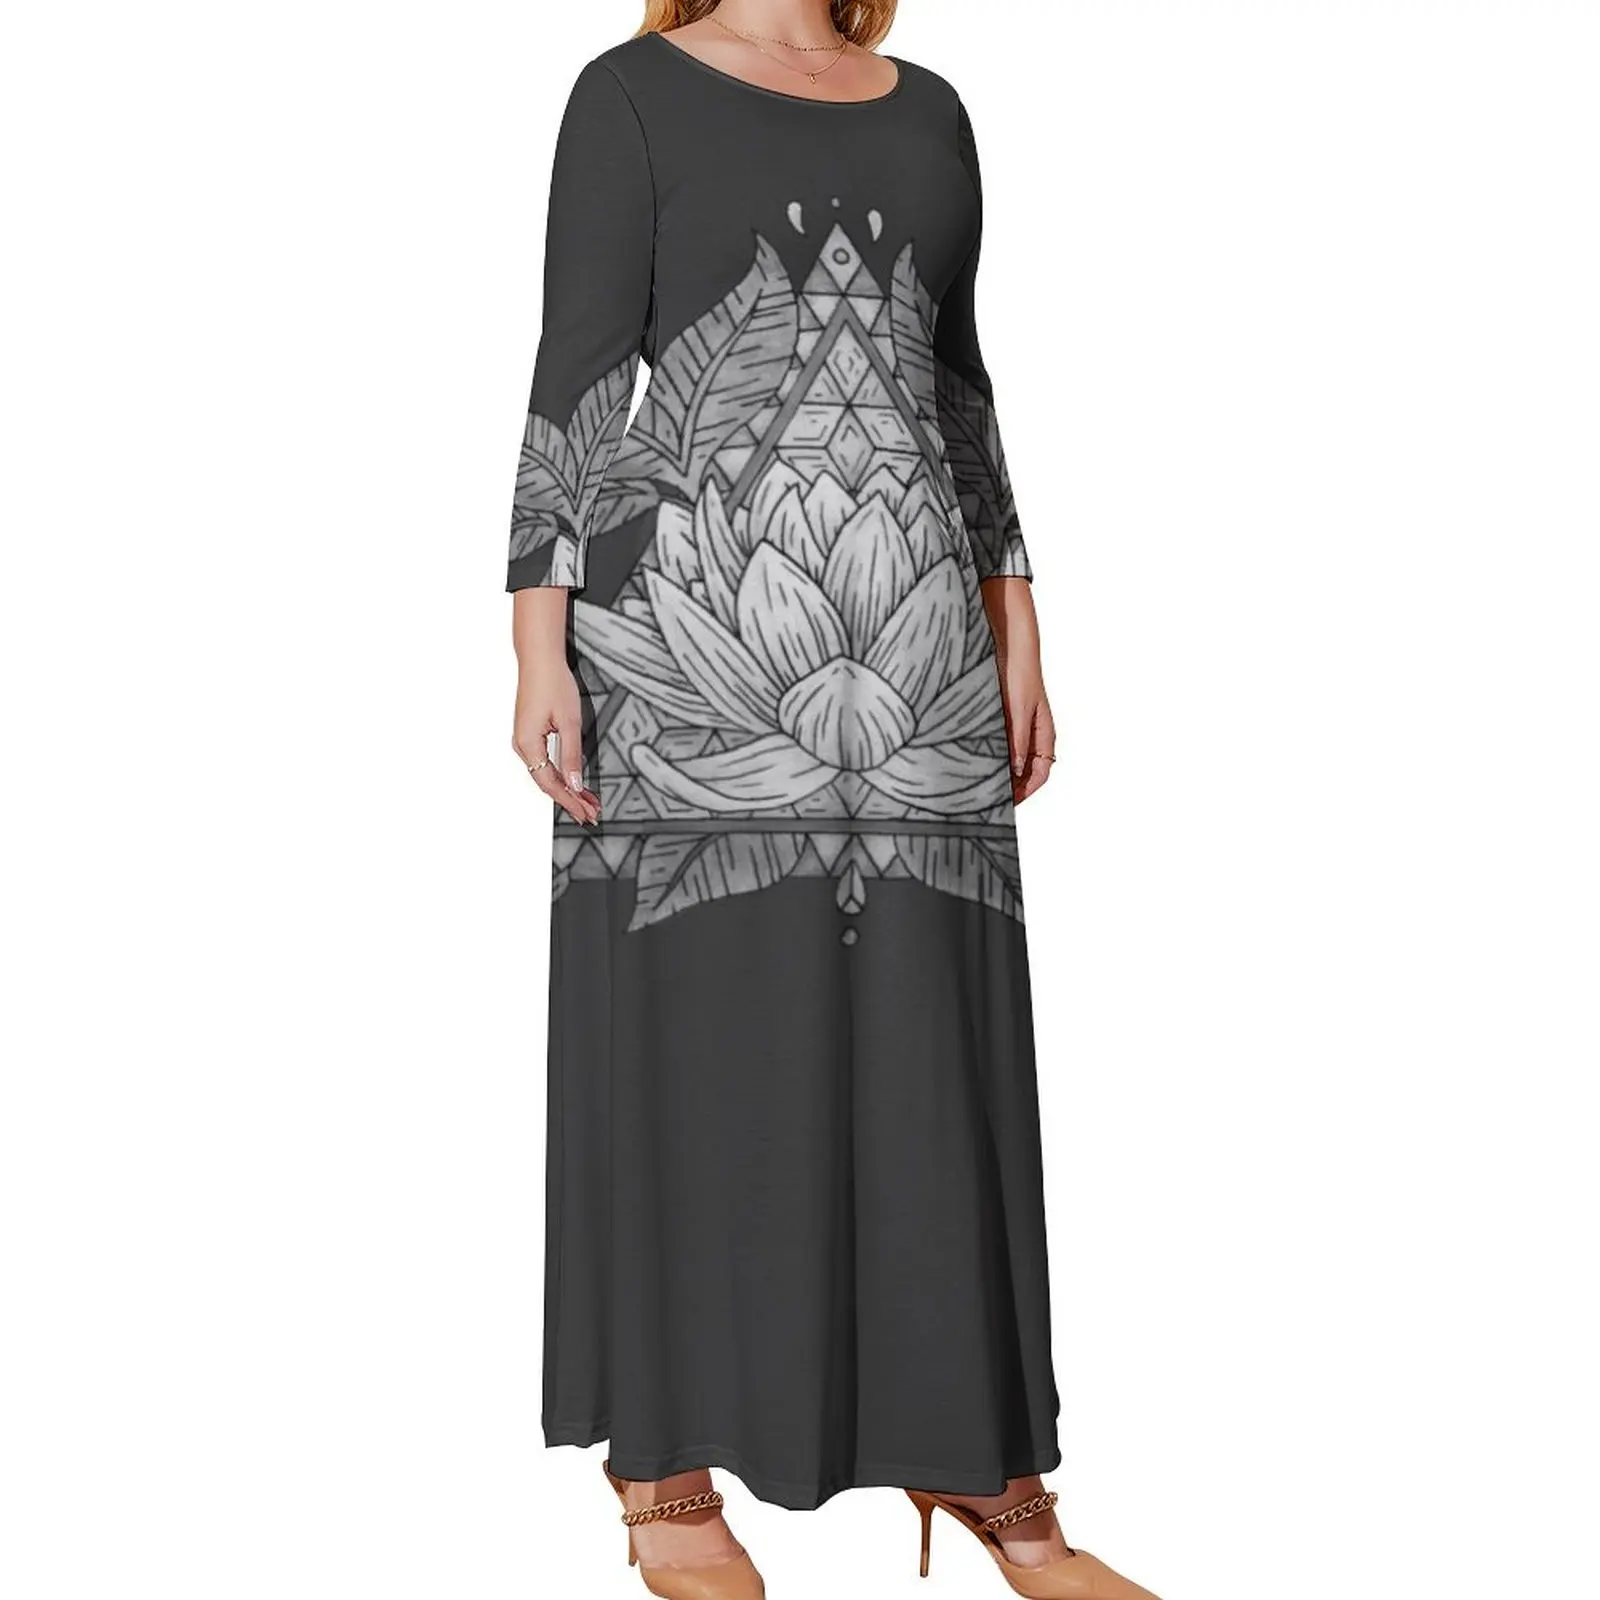 

Женское платье с длинным рукавом, серое Бандажное платье с геометрическим рисунком цветов лотоса, роскошное вечернее платье для женщин